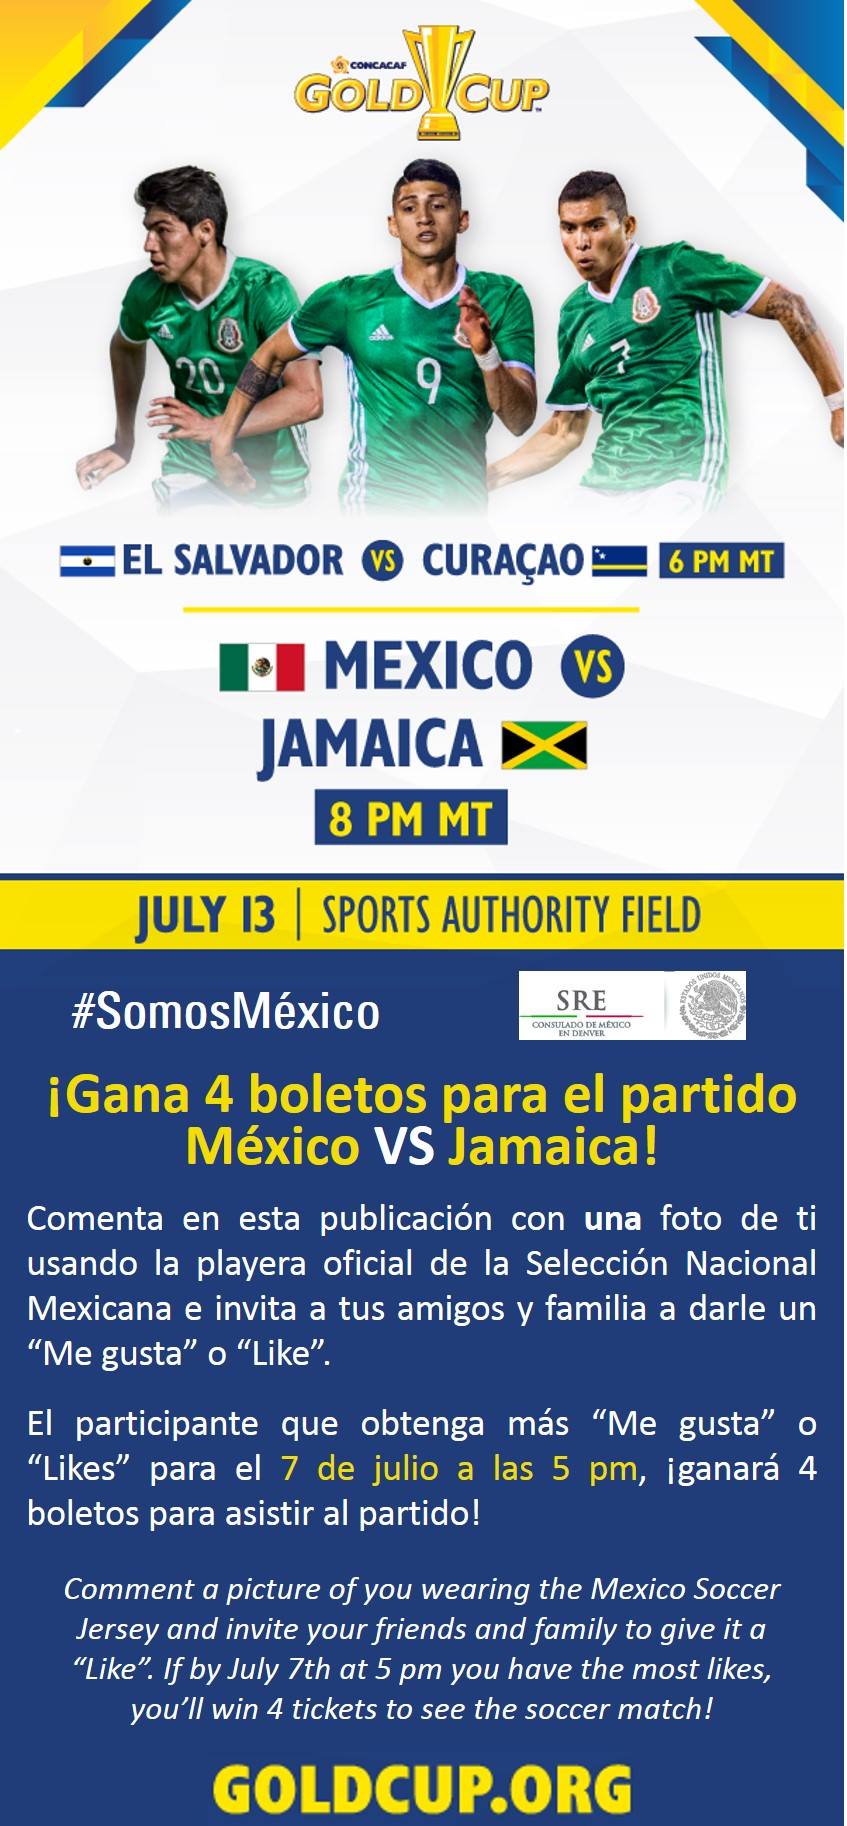 ¿Quieres ganar 4 boletos para el partido México vs Jamaica en Denver